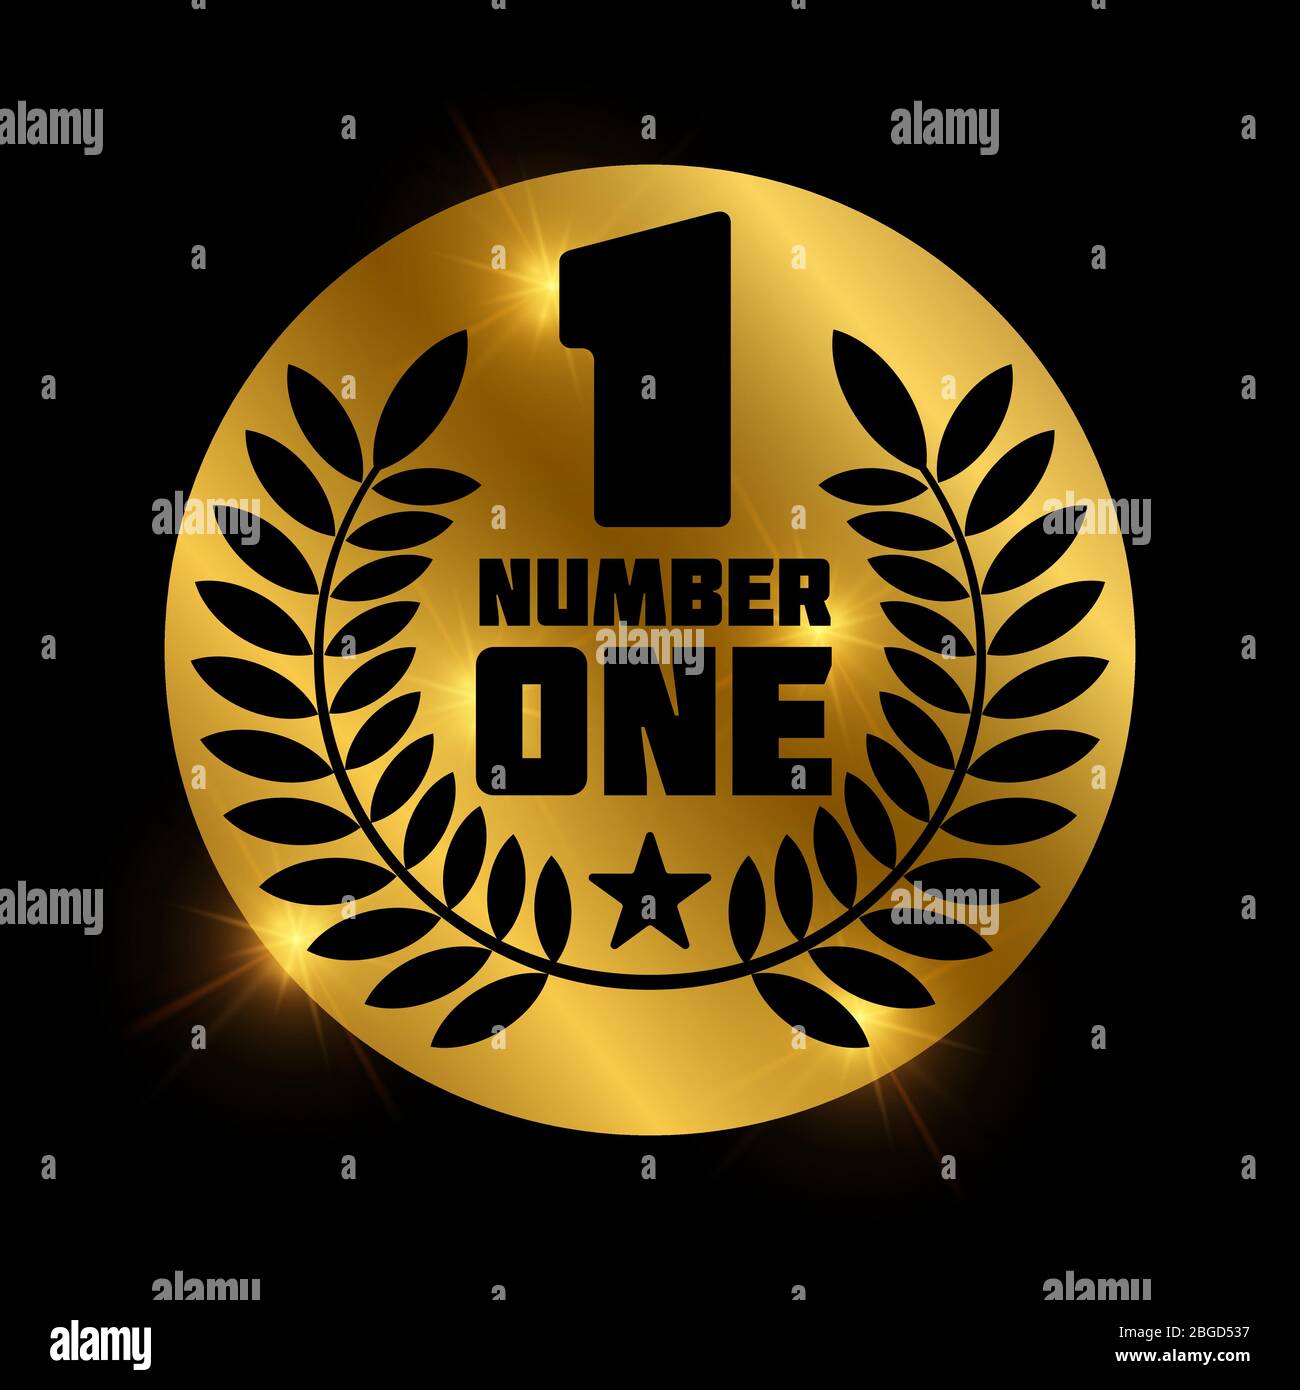 Nummer eins Retro-Label auf glänzendem goldenen Kreis. Etikett und Abzeichen Nummer 1, Vektorgrafik Stock Vektor